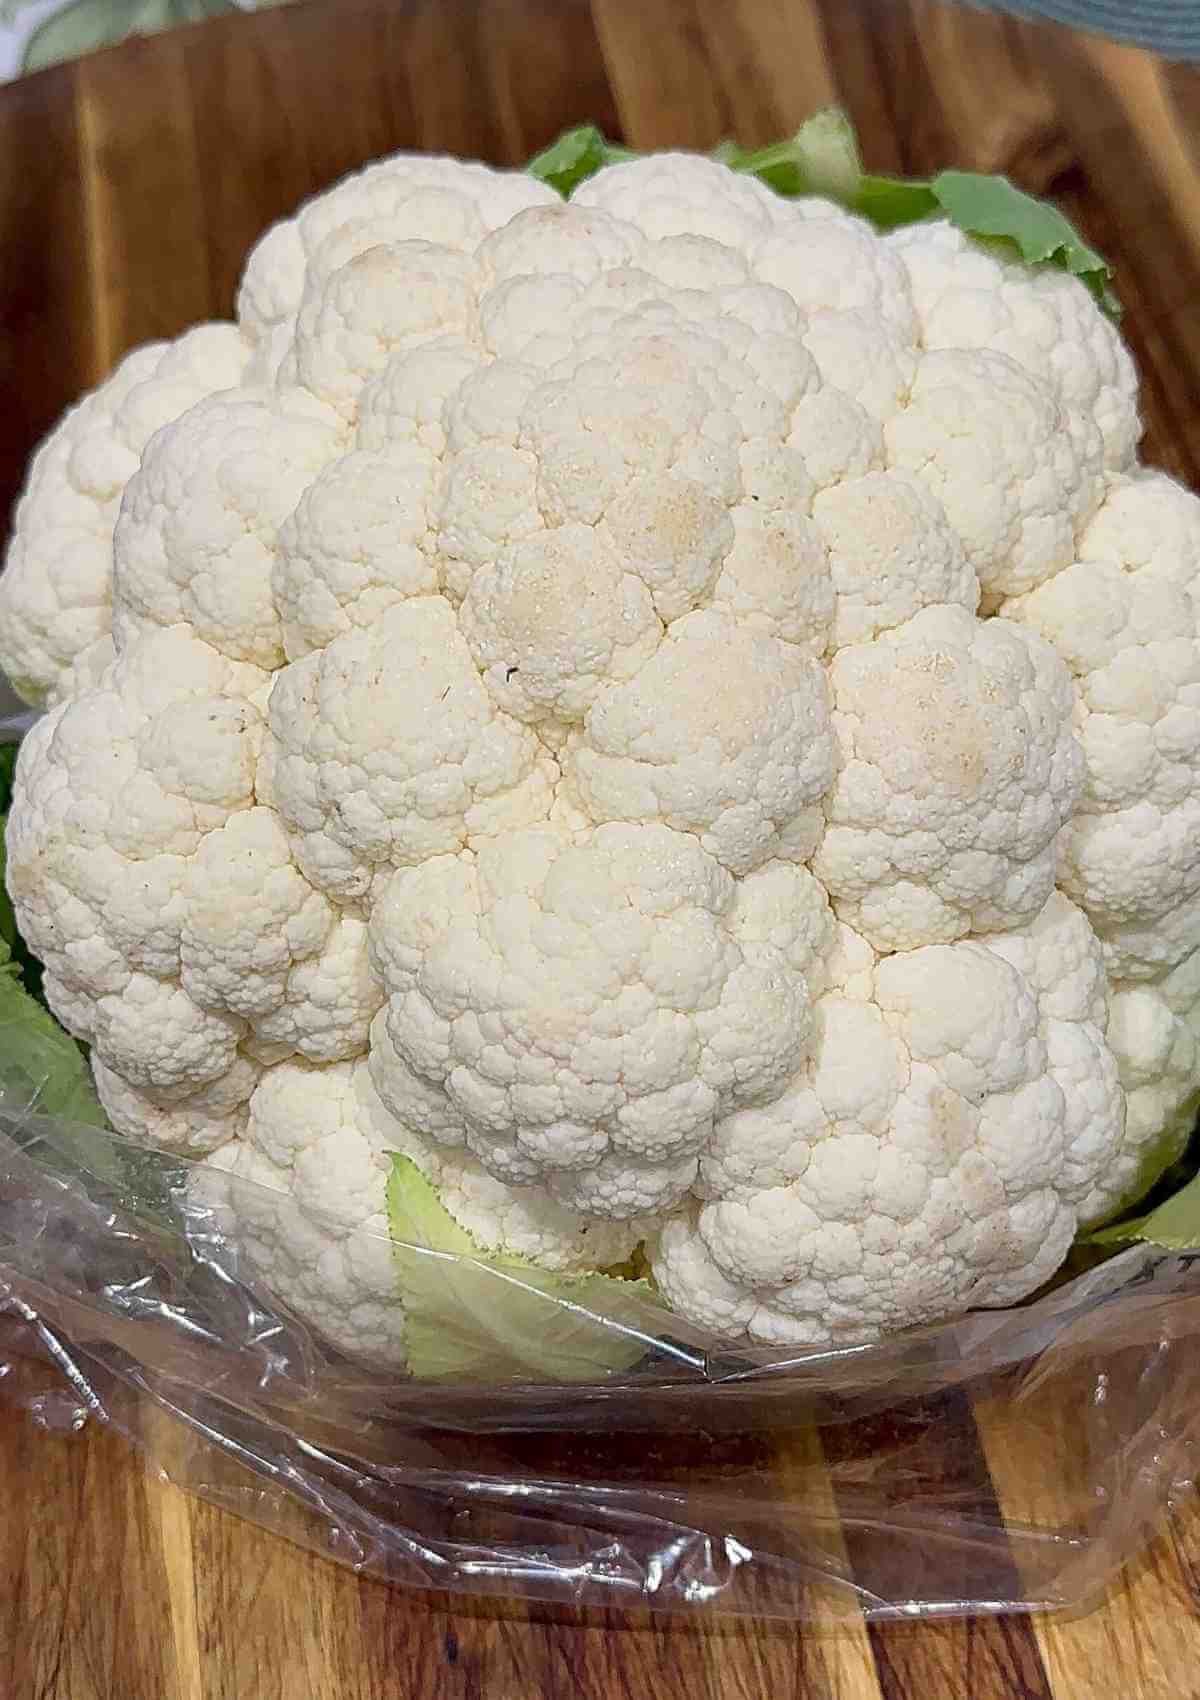 A head of white cauliflower